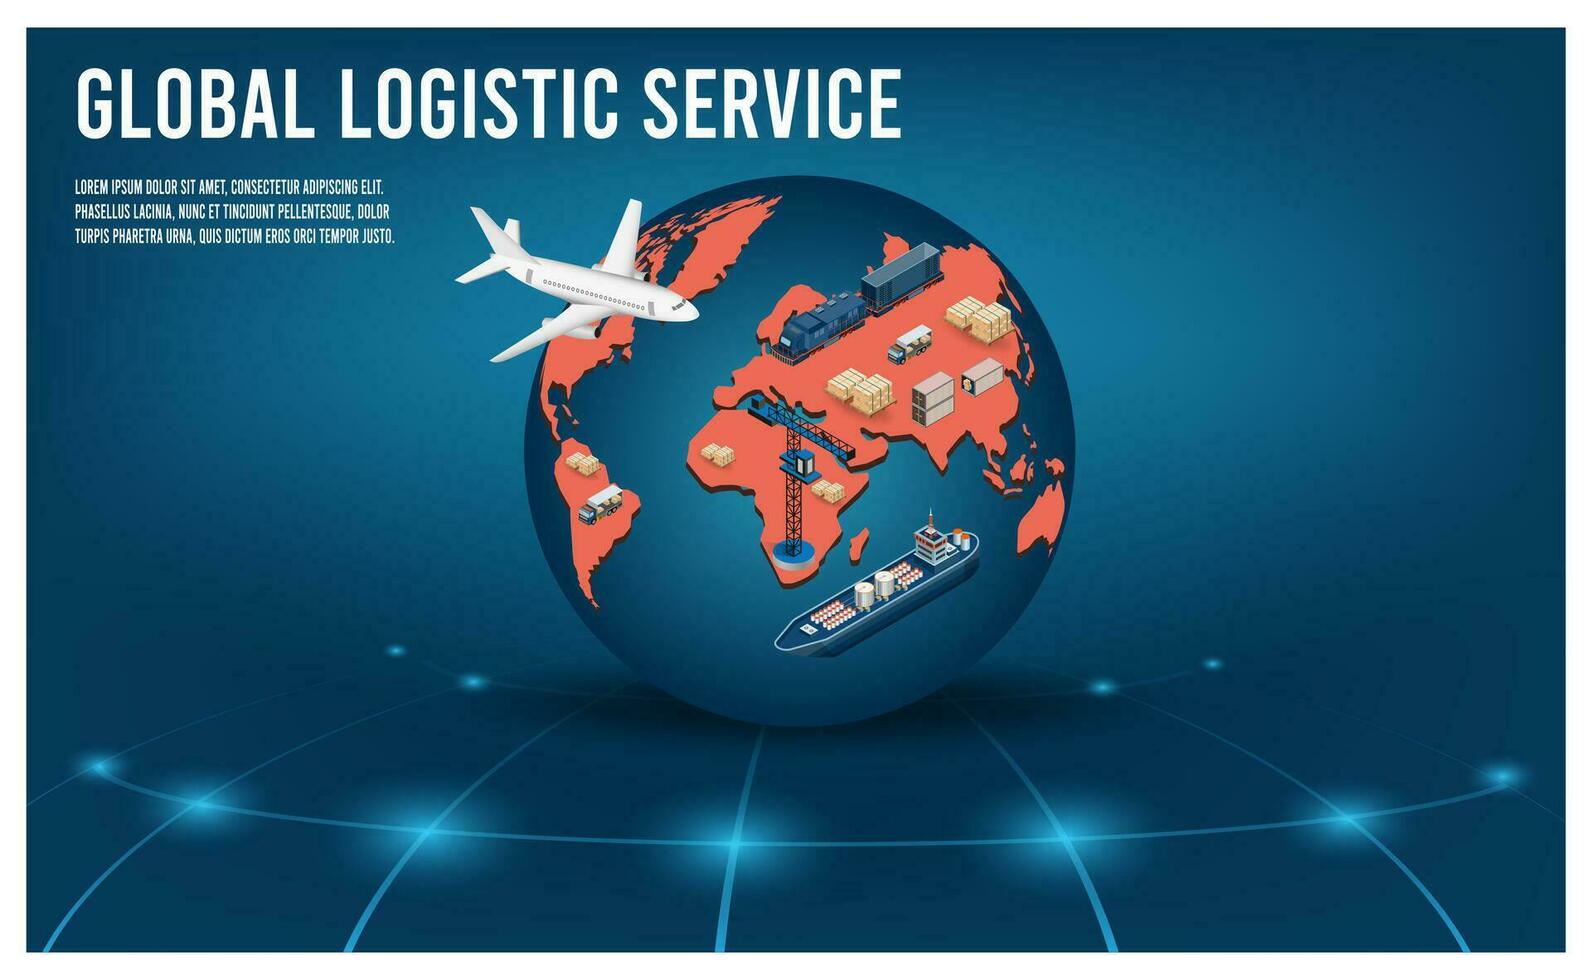 moderno global logístico Servicio concepto con exportar, importar, almacén negocio y transporte. vector ilustración eps10